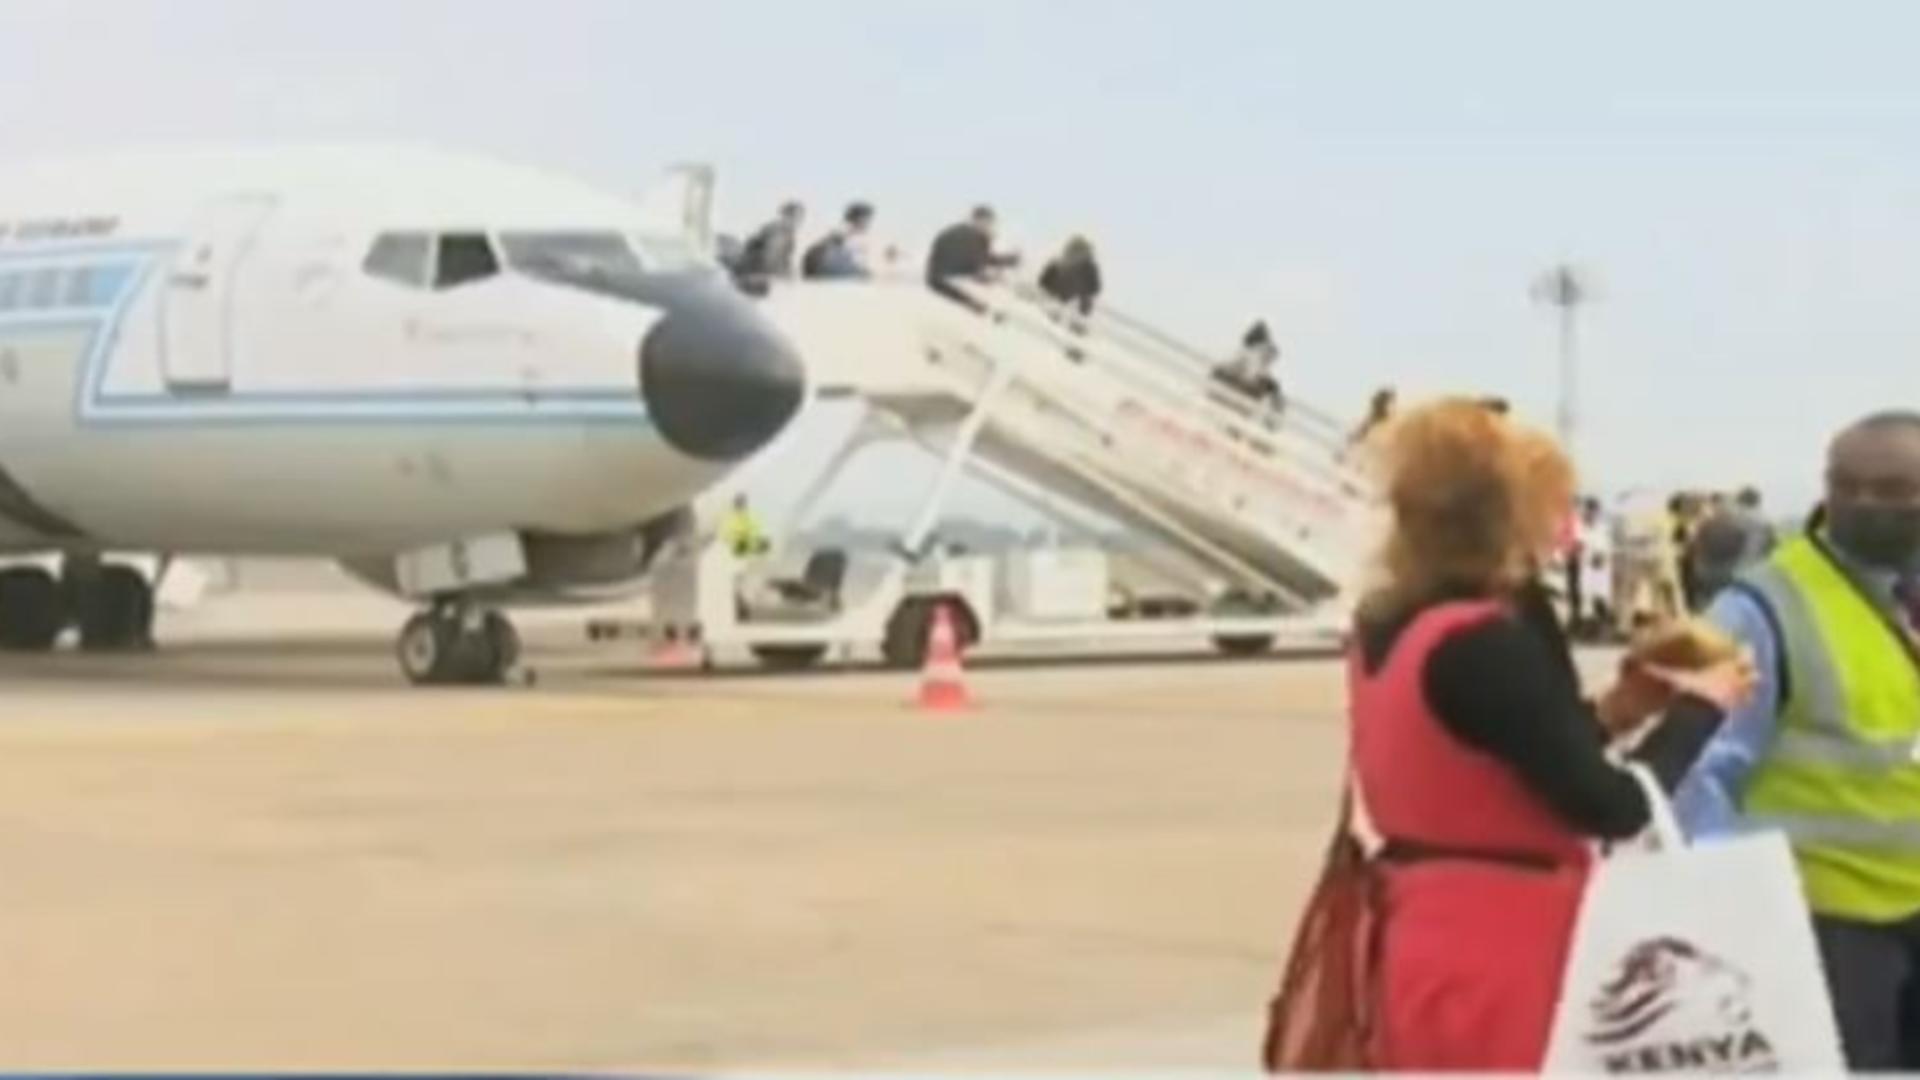 Primul avion cu turiști sosit în Kenya, după lungi perioade de restricții, a fost primit cu bucurie de către localnici